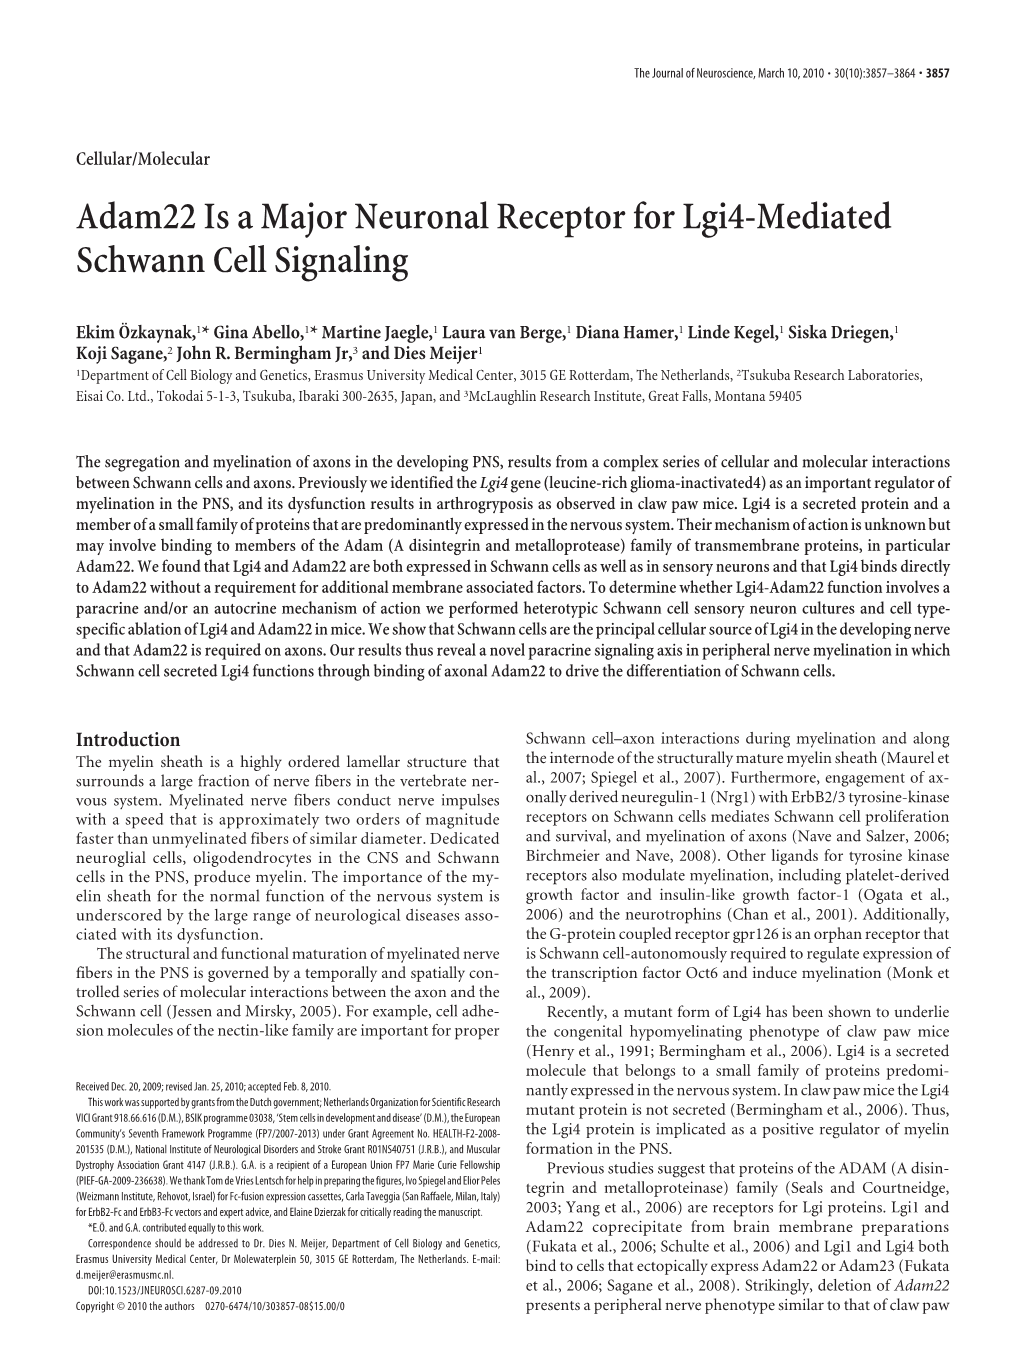 Adam22 Is a Major Neuronal Receptor for Lgi4-Mediated Schwann Cell Signaling